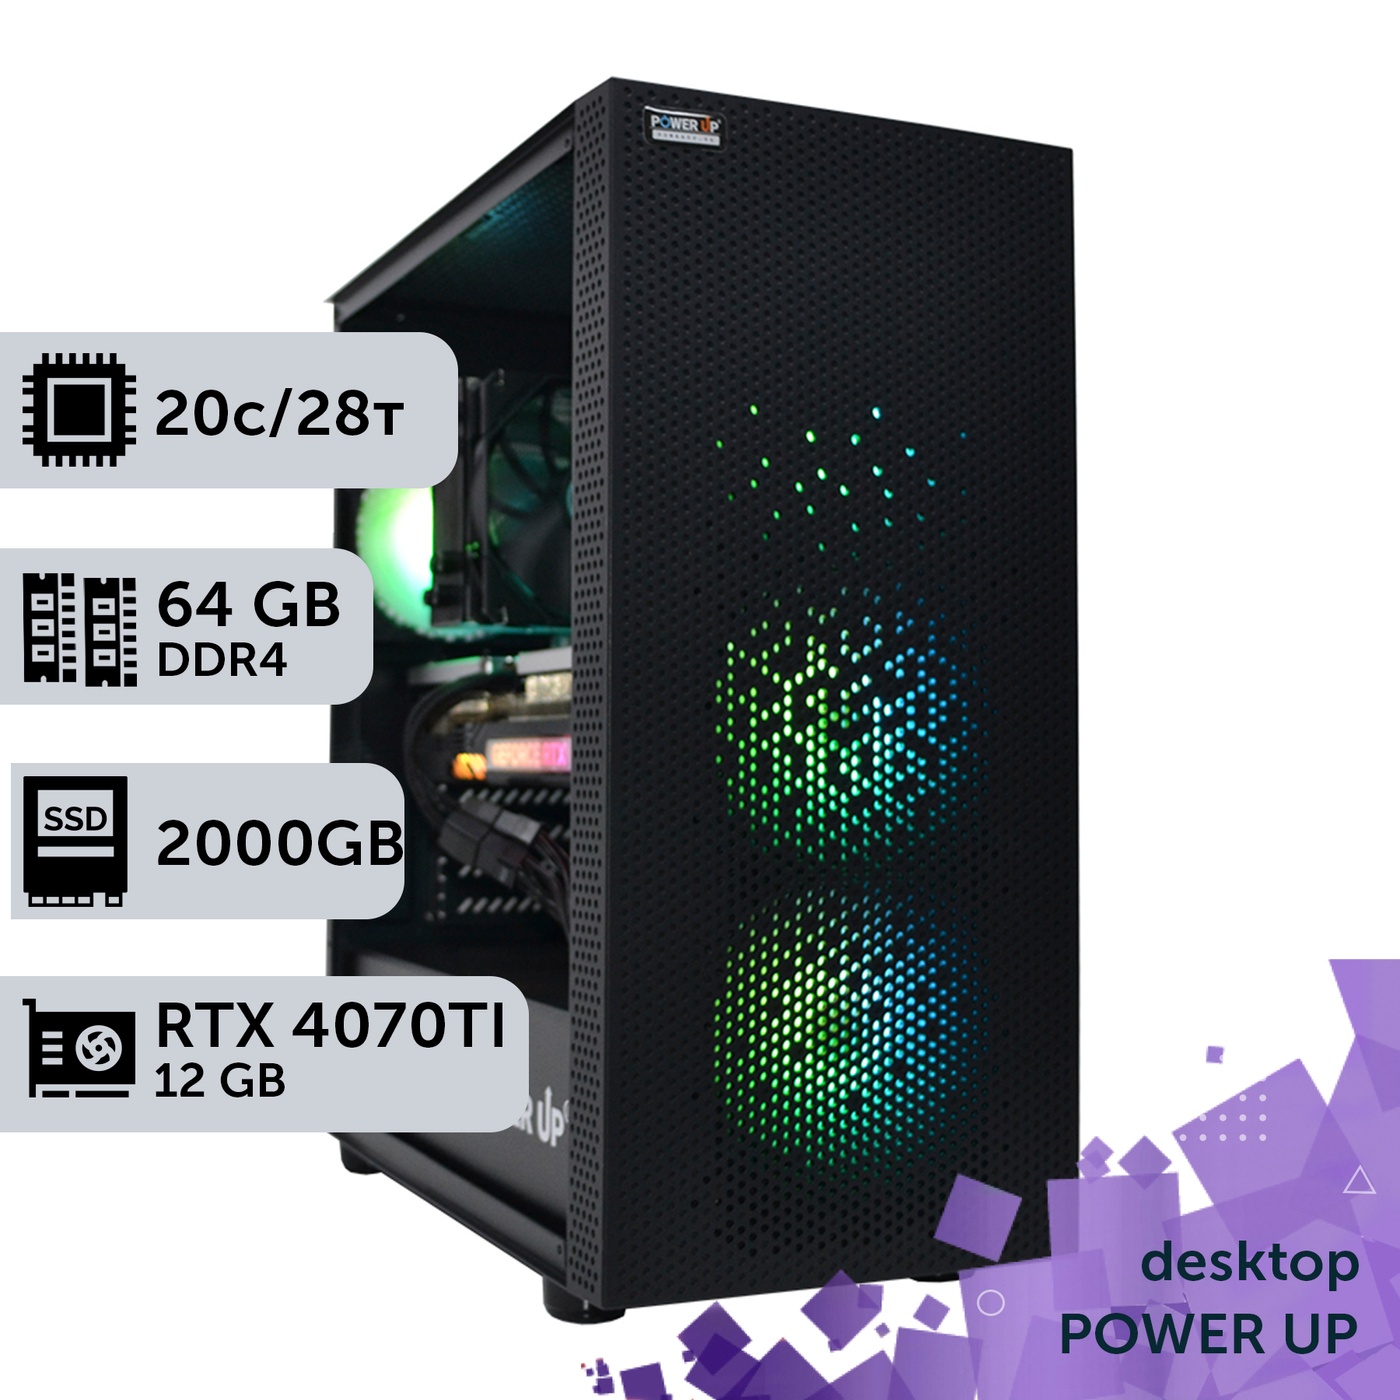 Робоча станція PowerUp Desktop #352 Core i7 14700K/64 GB/SSD 2TB/GeForce RTX 4070Ti 12GB